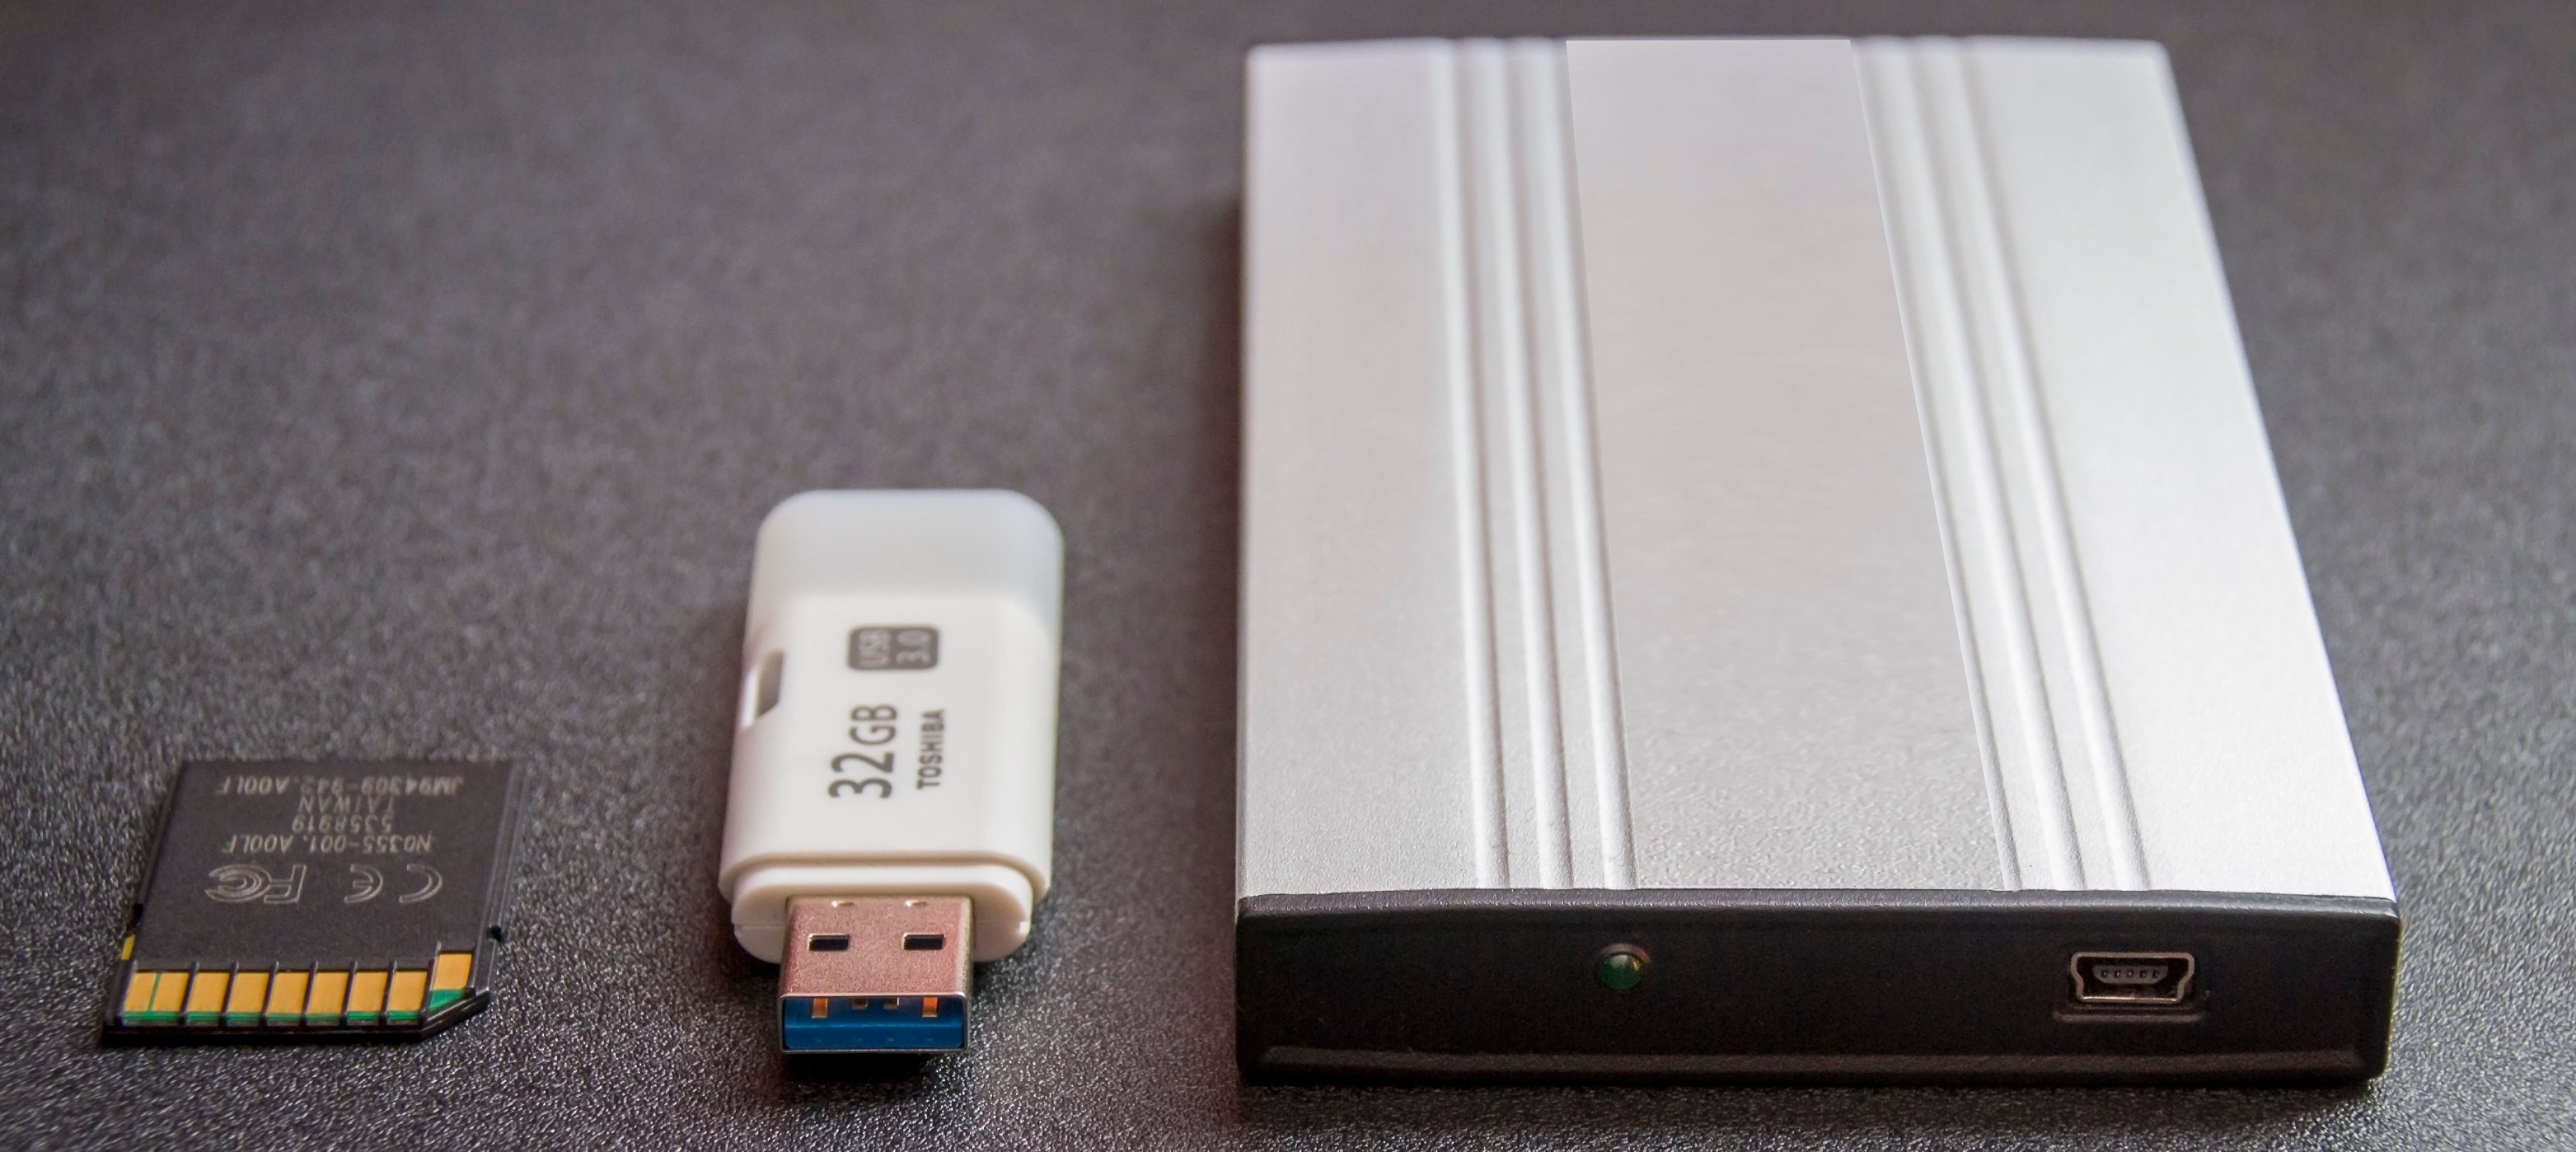 USB 드라이브에서 데이터 복구하는 방법..